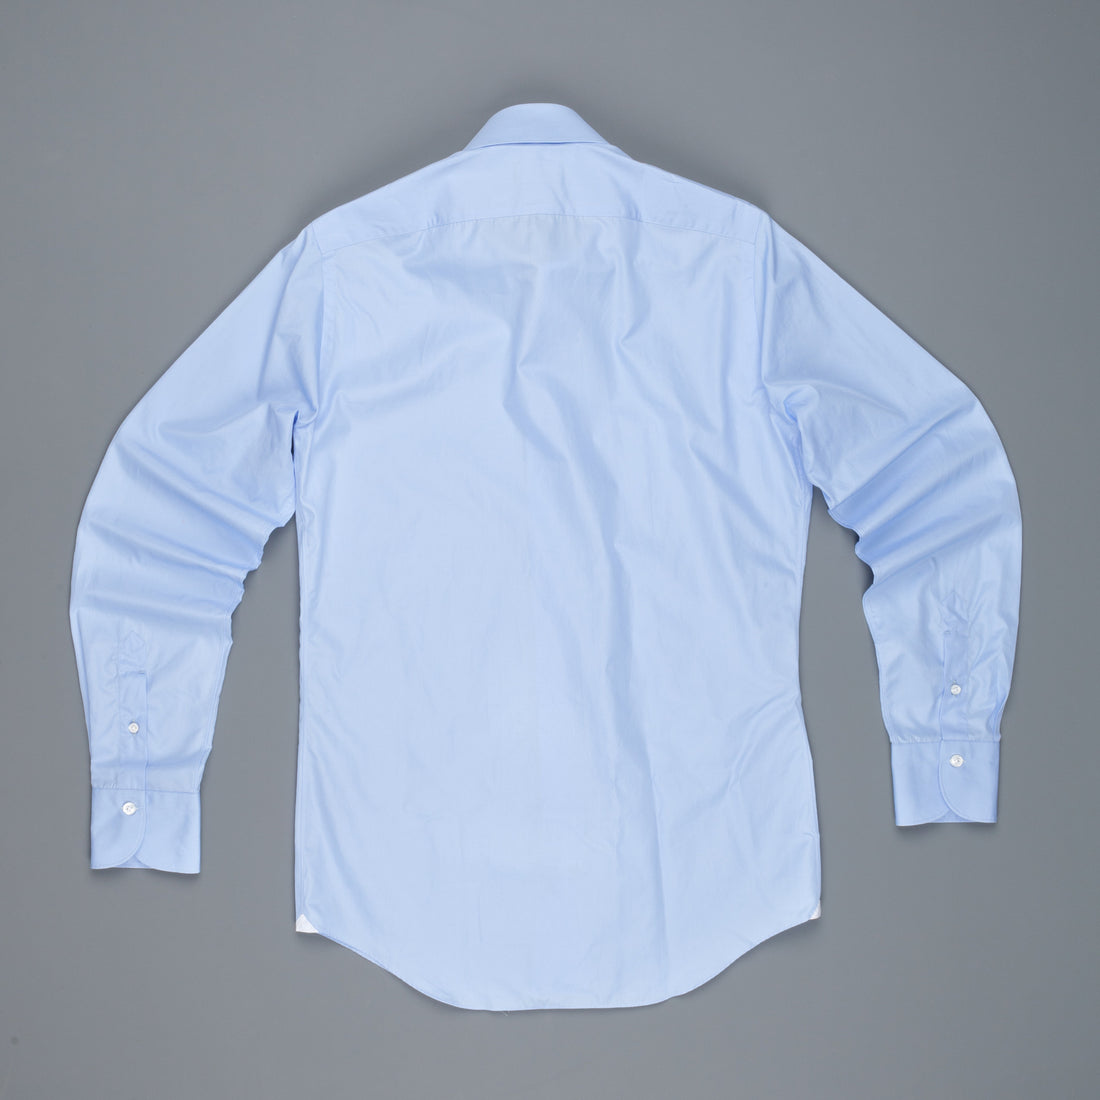 Finamore Milano Shirt Soft Collar Eduardo Blue